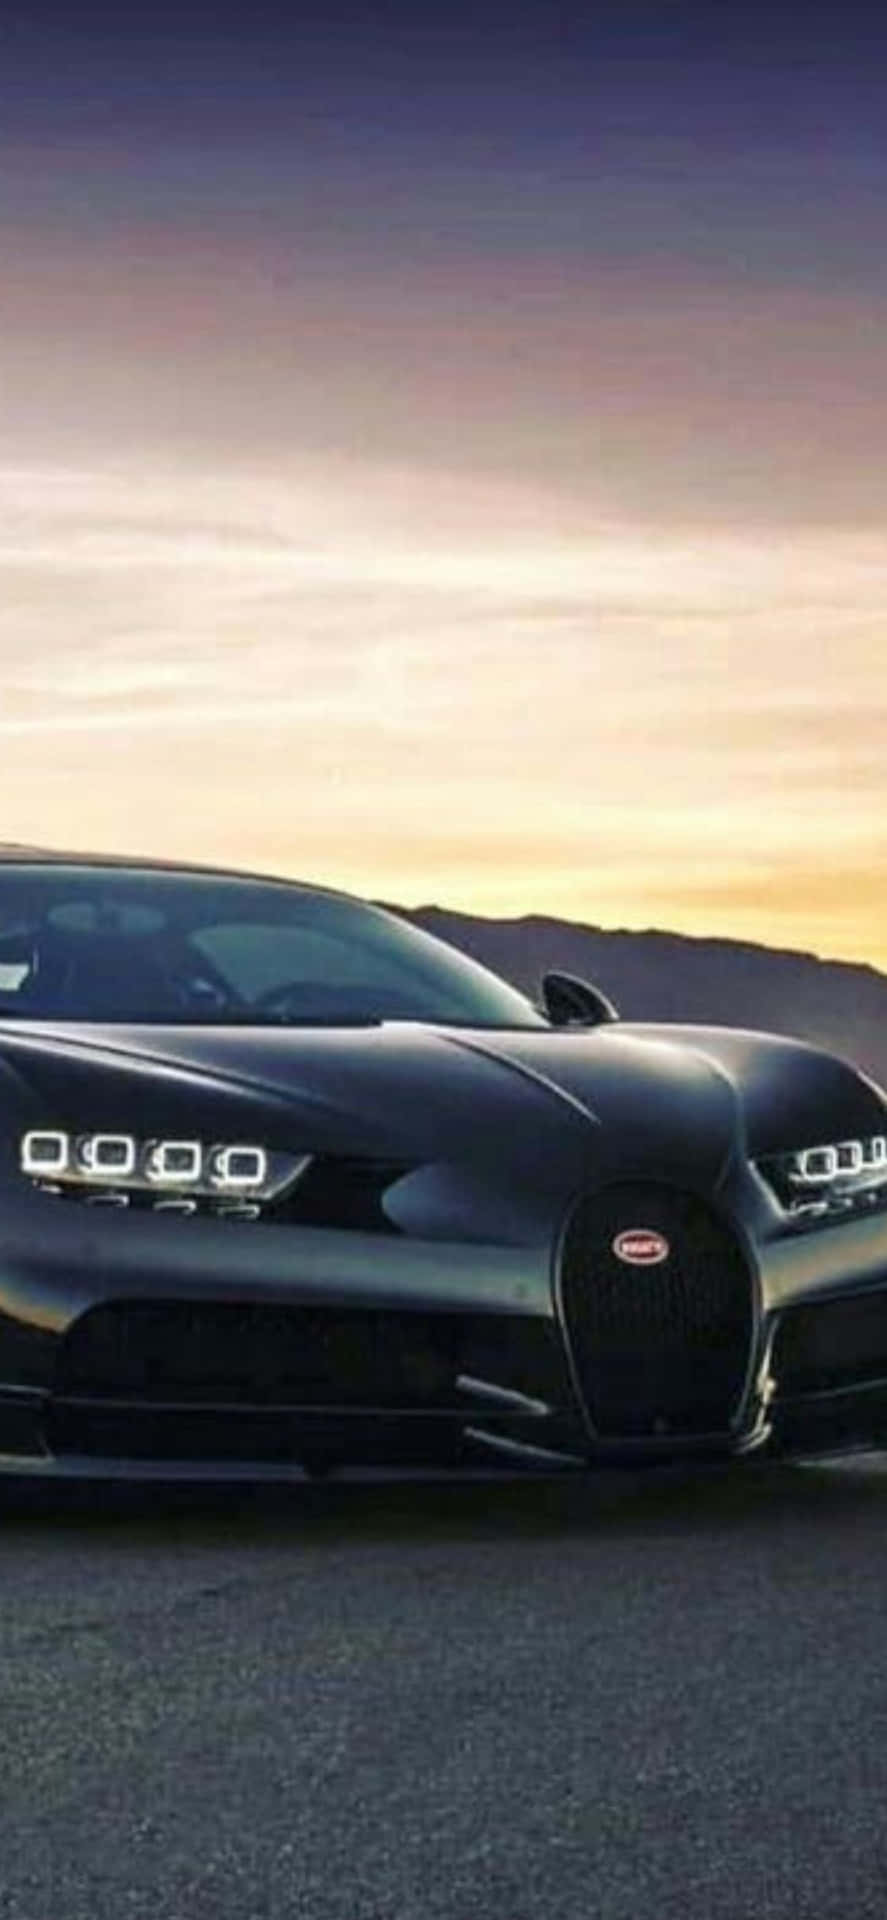 Iphonexs Bugatti: La Combinación Definitiva De Lujo Y Tecnología.